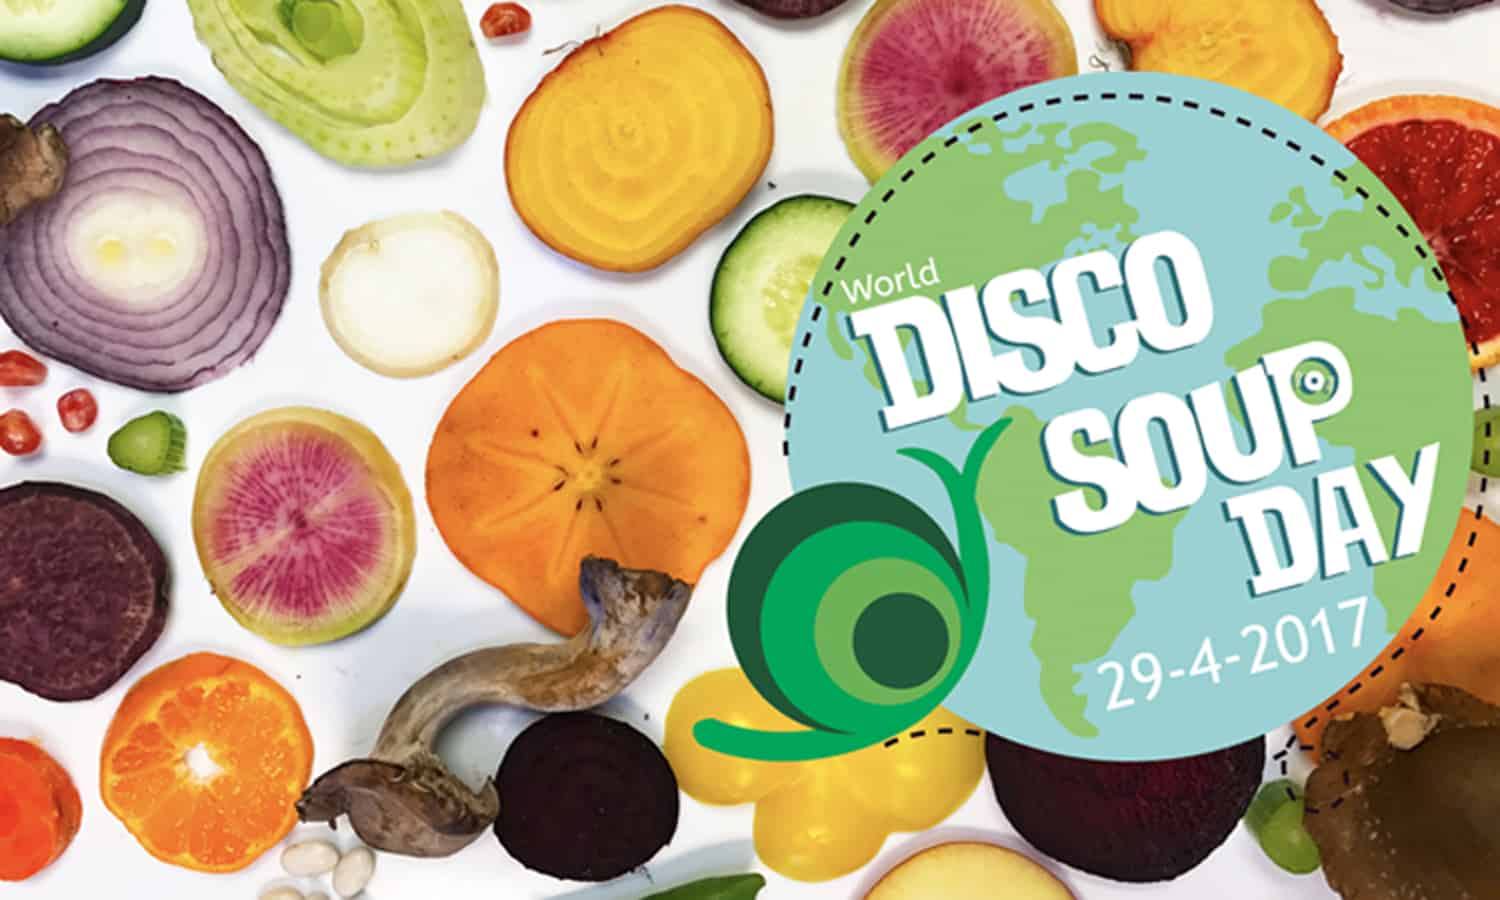 盛宴和食物浪费一天世界迪斯科汤——最大的食品浪费地球上的意识活动于4月29日。